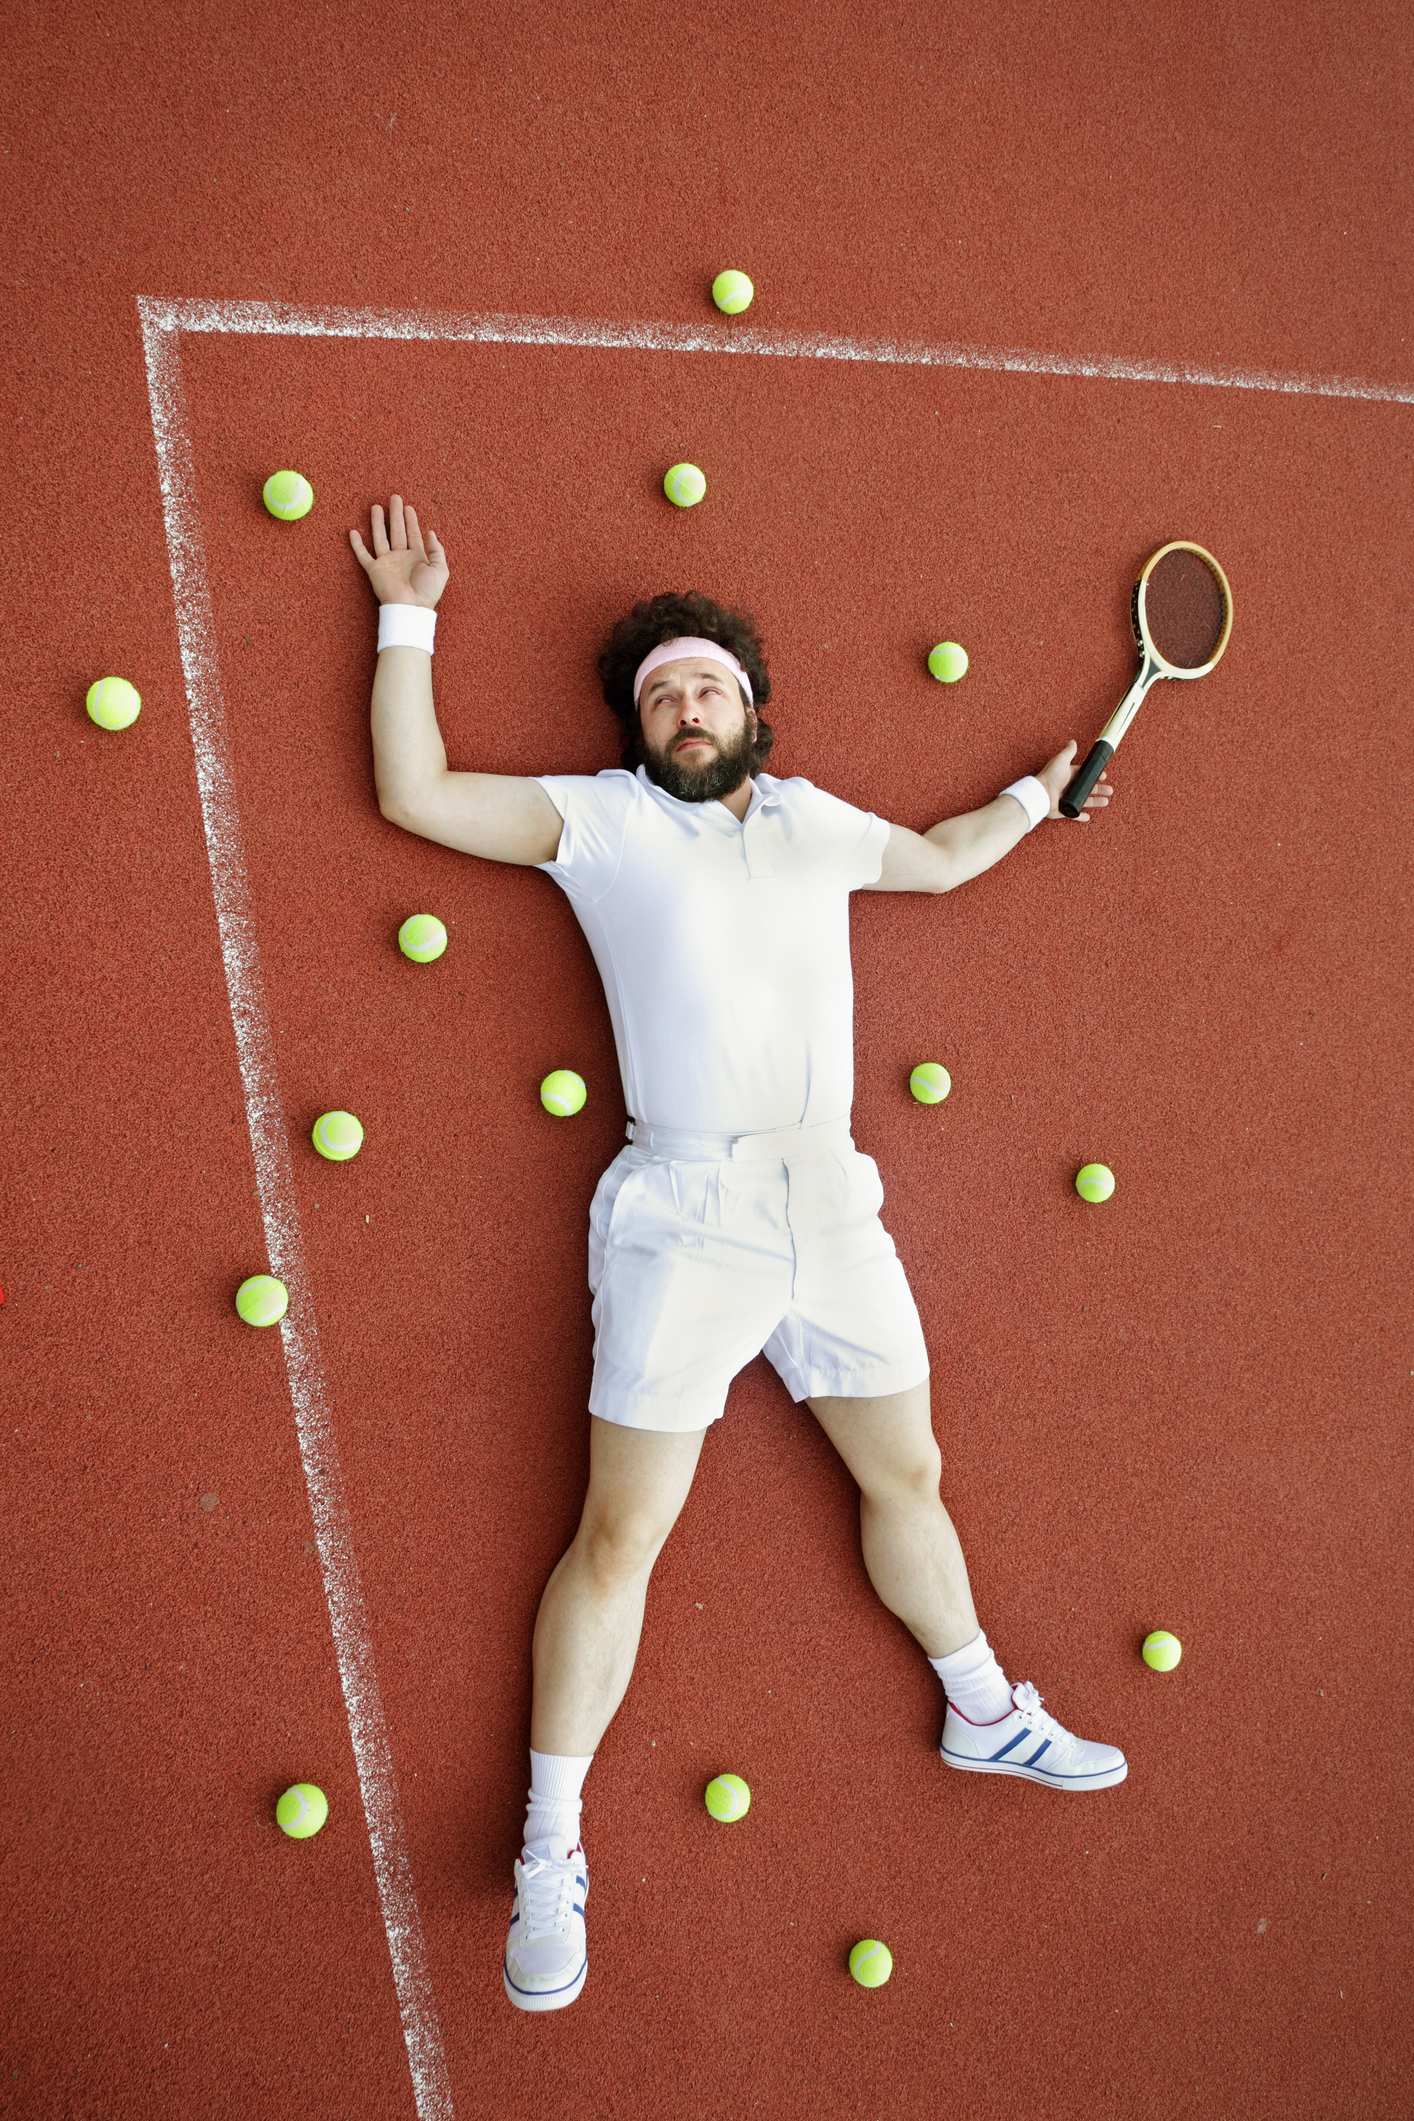 Top 10 #Frases Que Puedes Decir En Un Partido De Tenis Y En La Cama…